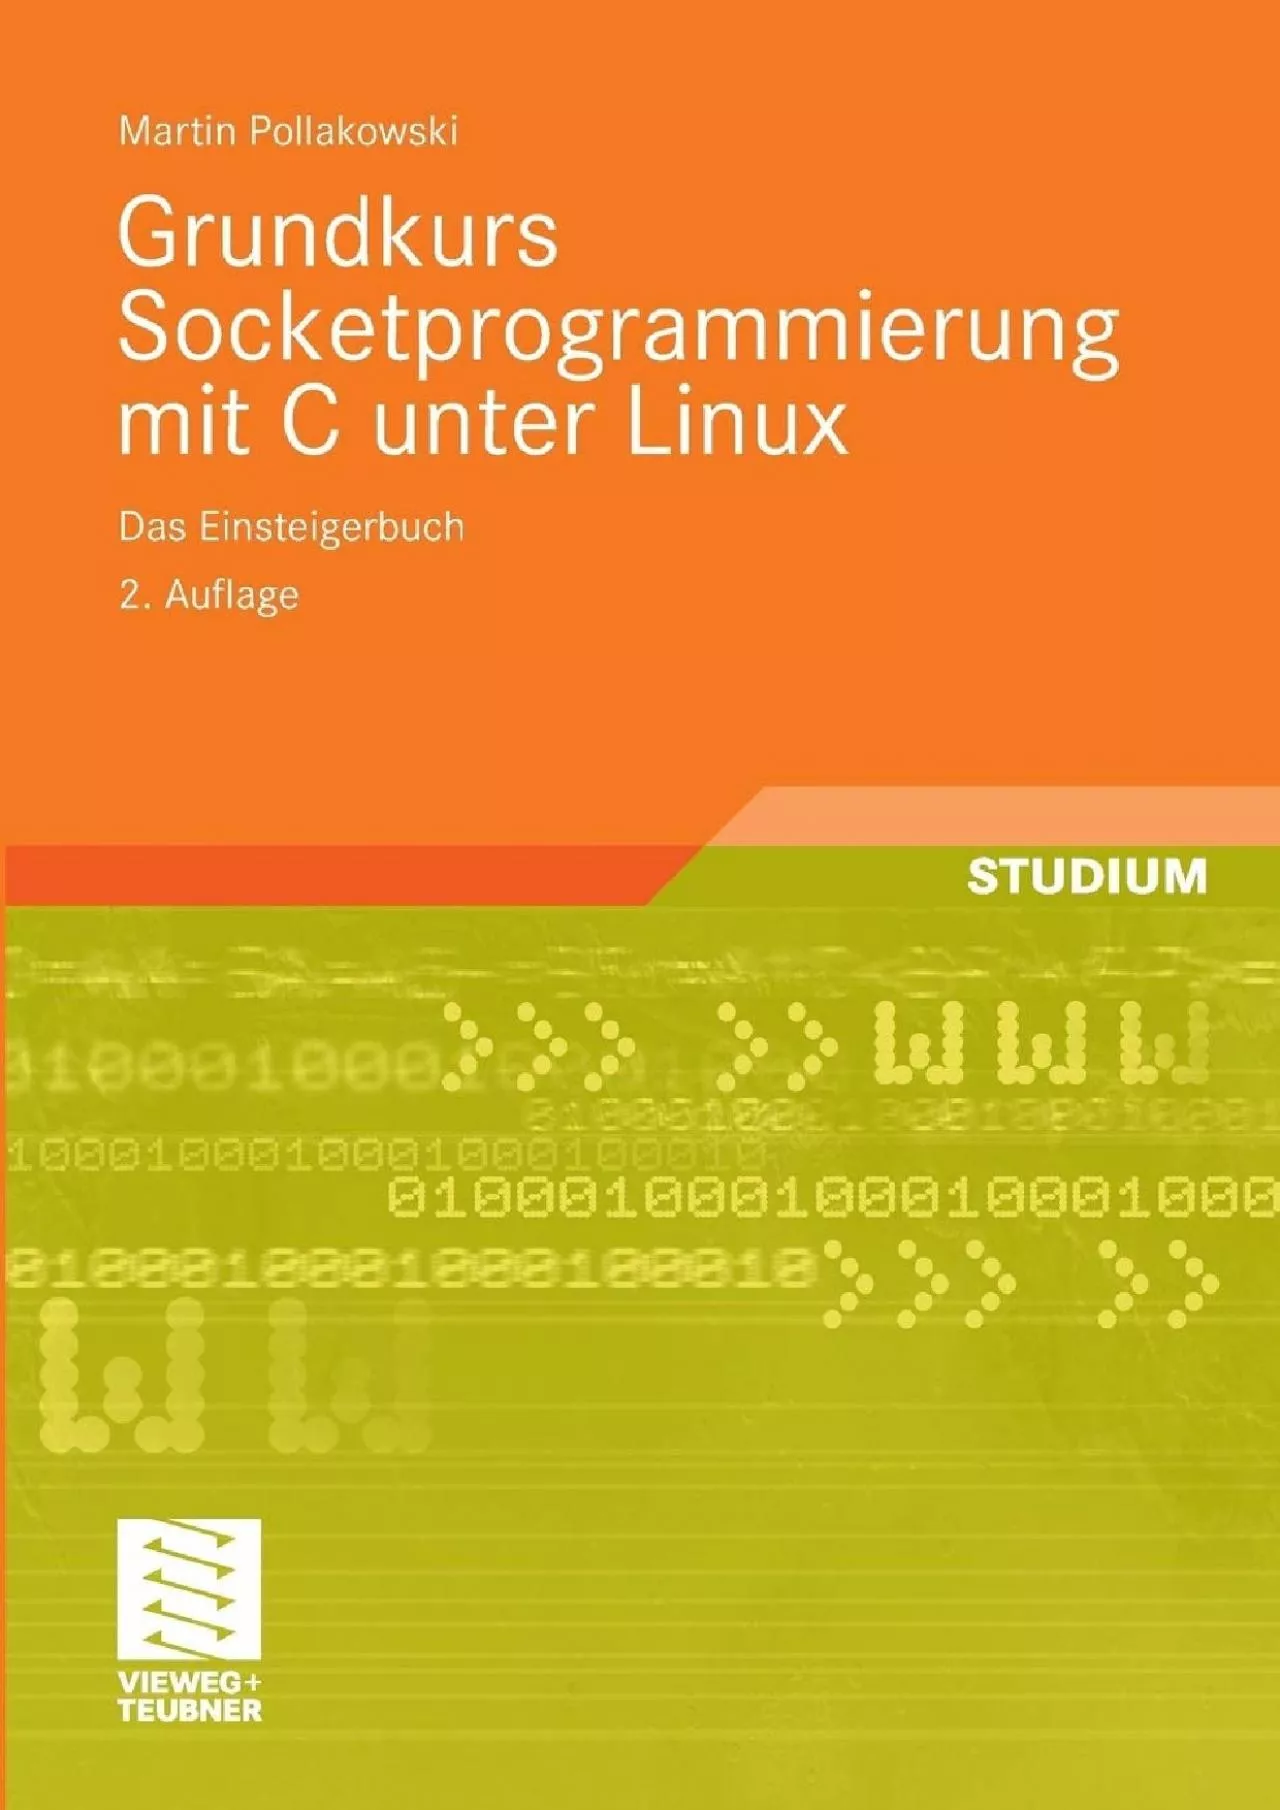 [DOWLOAD]-Grundkurs Socketprogrammierung mit C unter Linux: Das Einsteigerbuch (German